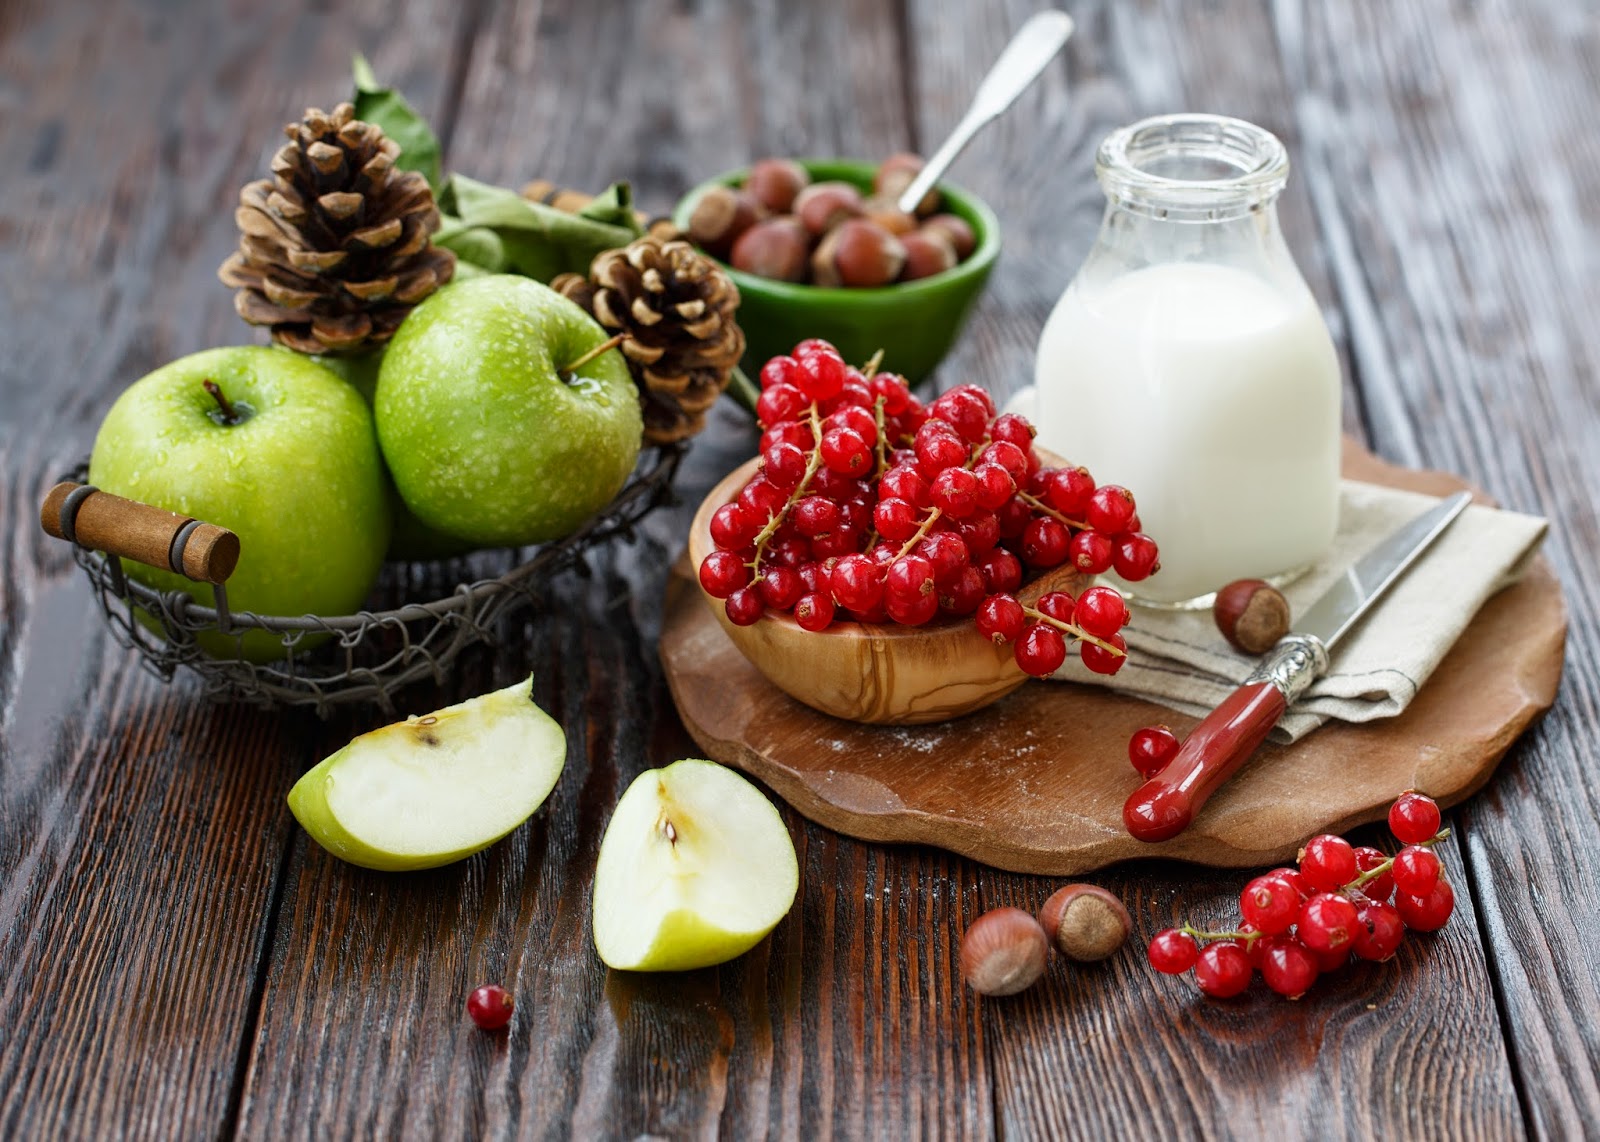 La fruita i els fruits secs, dins l’alimentació diària